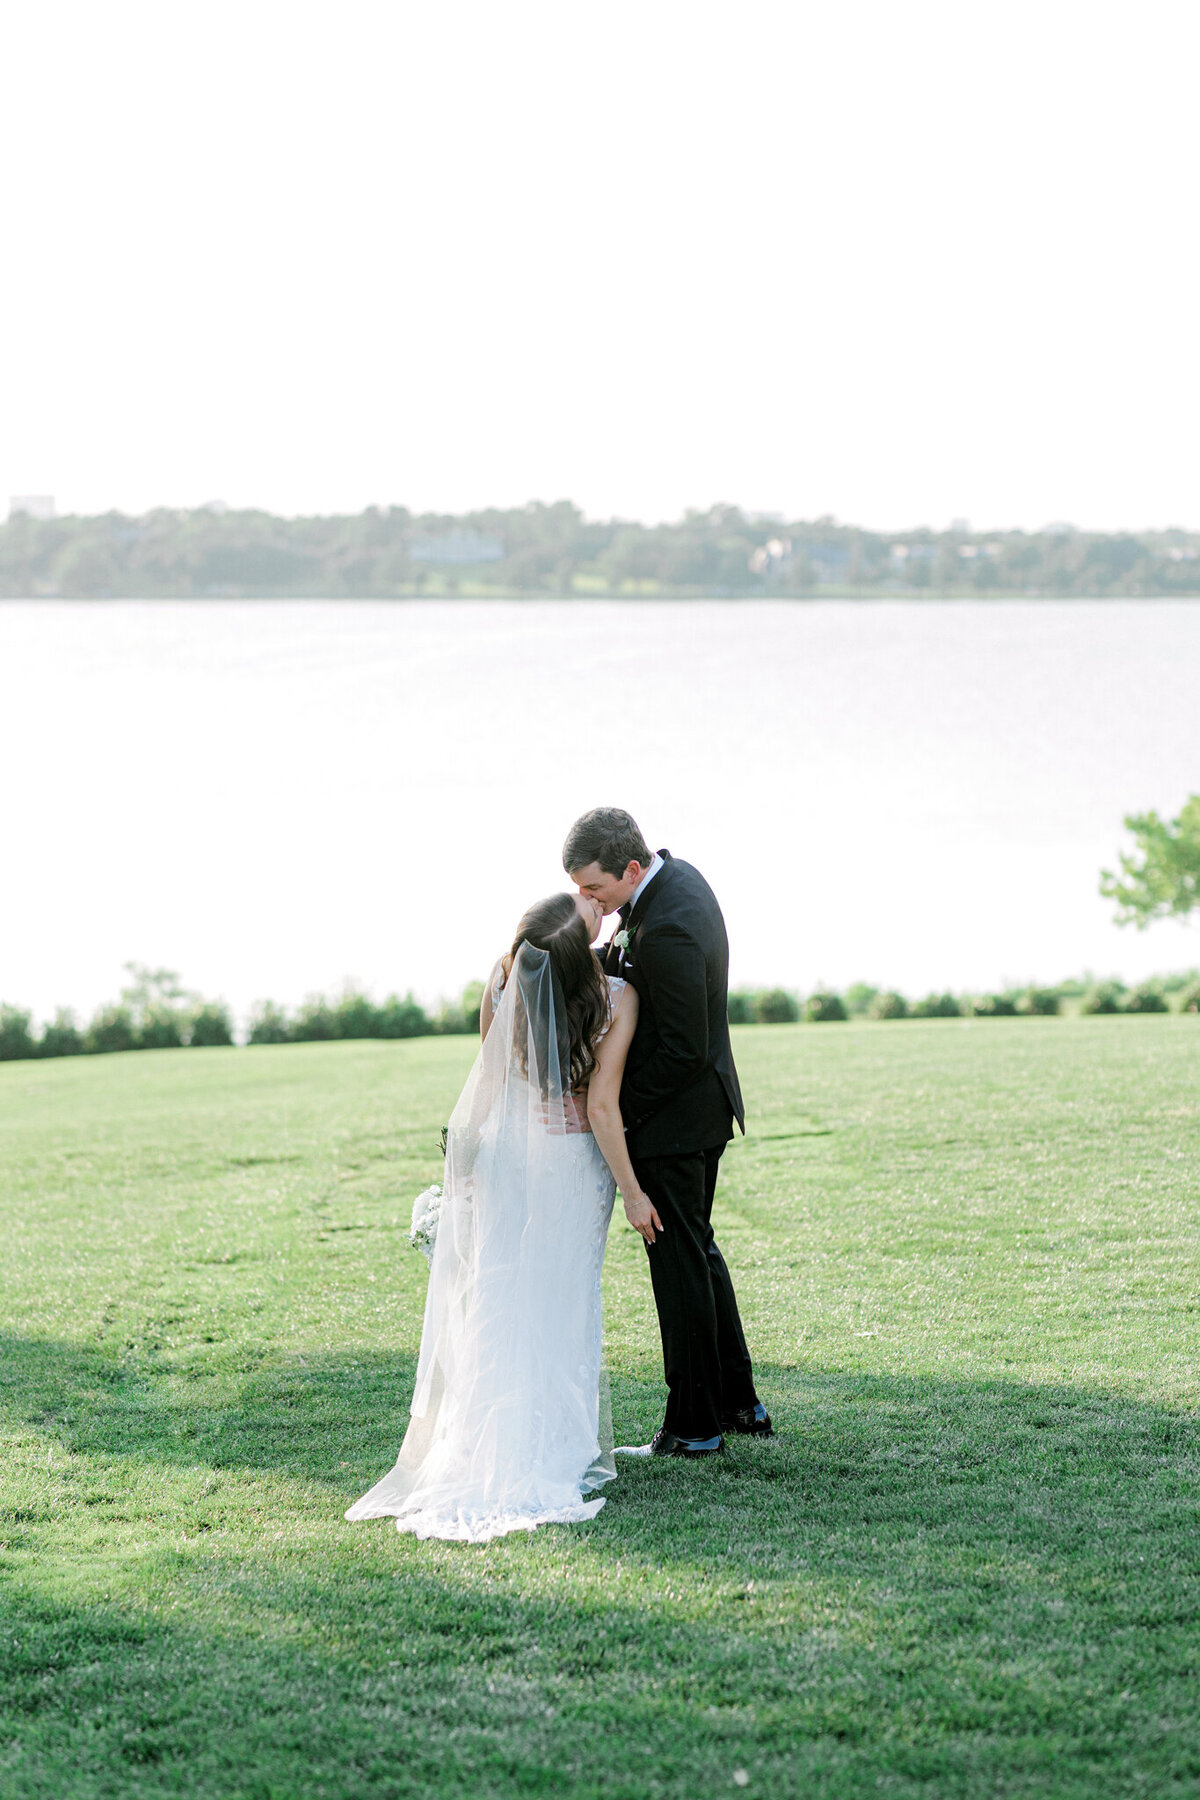 Gena & Matt's Wedding at the Dallas Arboretum | Dallas Wedding Photographer | Sami Kathryn Photography-169